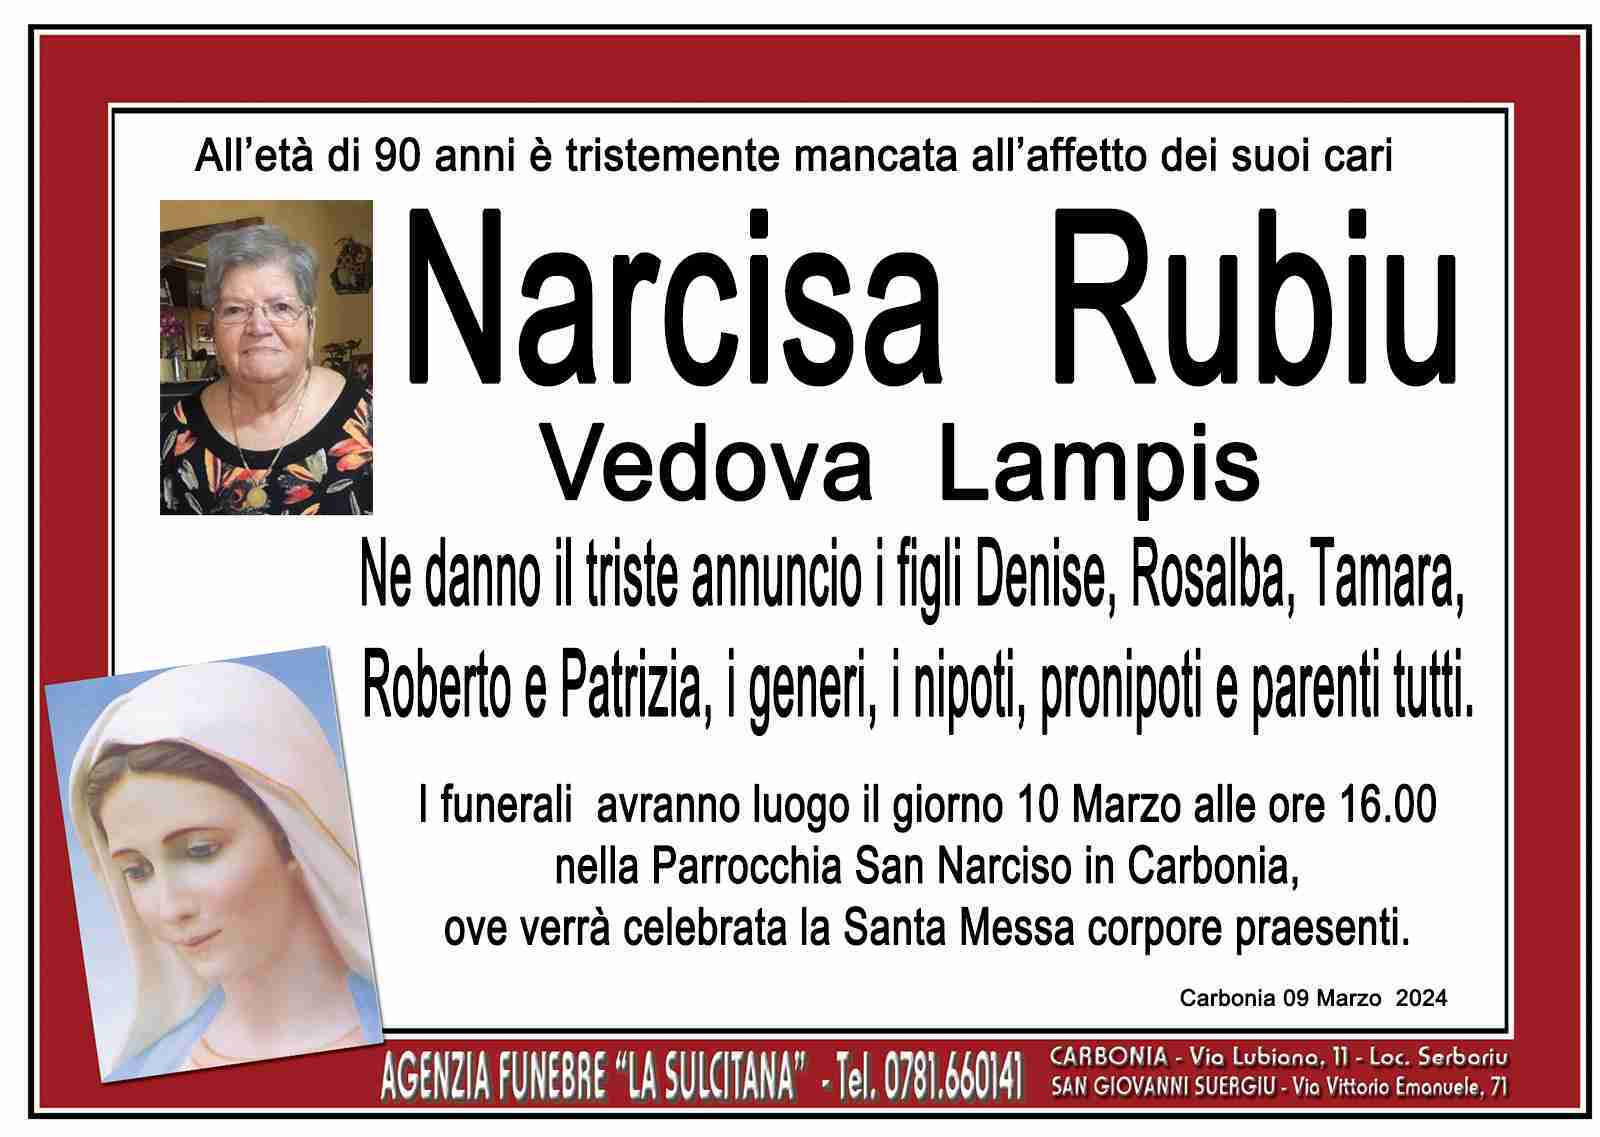 Narcisa Rubiu